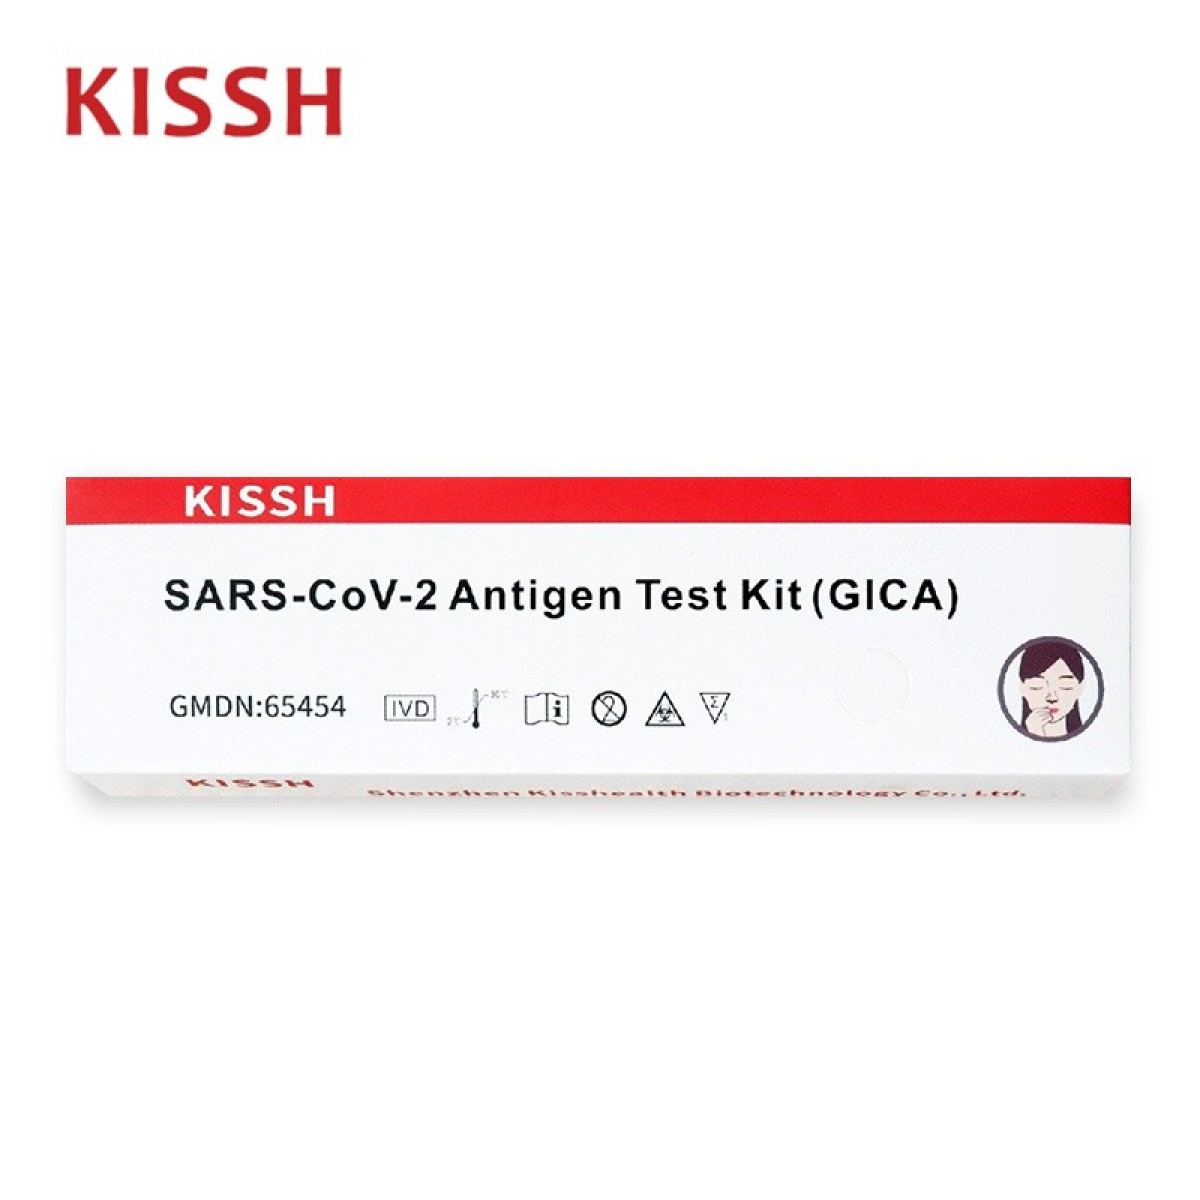  新冠病毒快速測試套裝 - KISSH 新冠病毒抗原快速測試棒 (鼻咽拭子版)